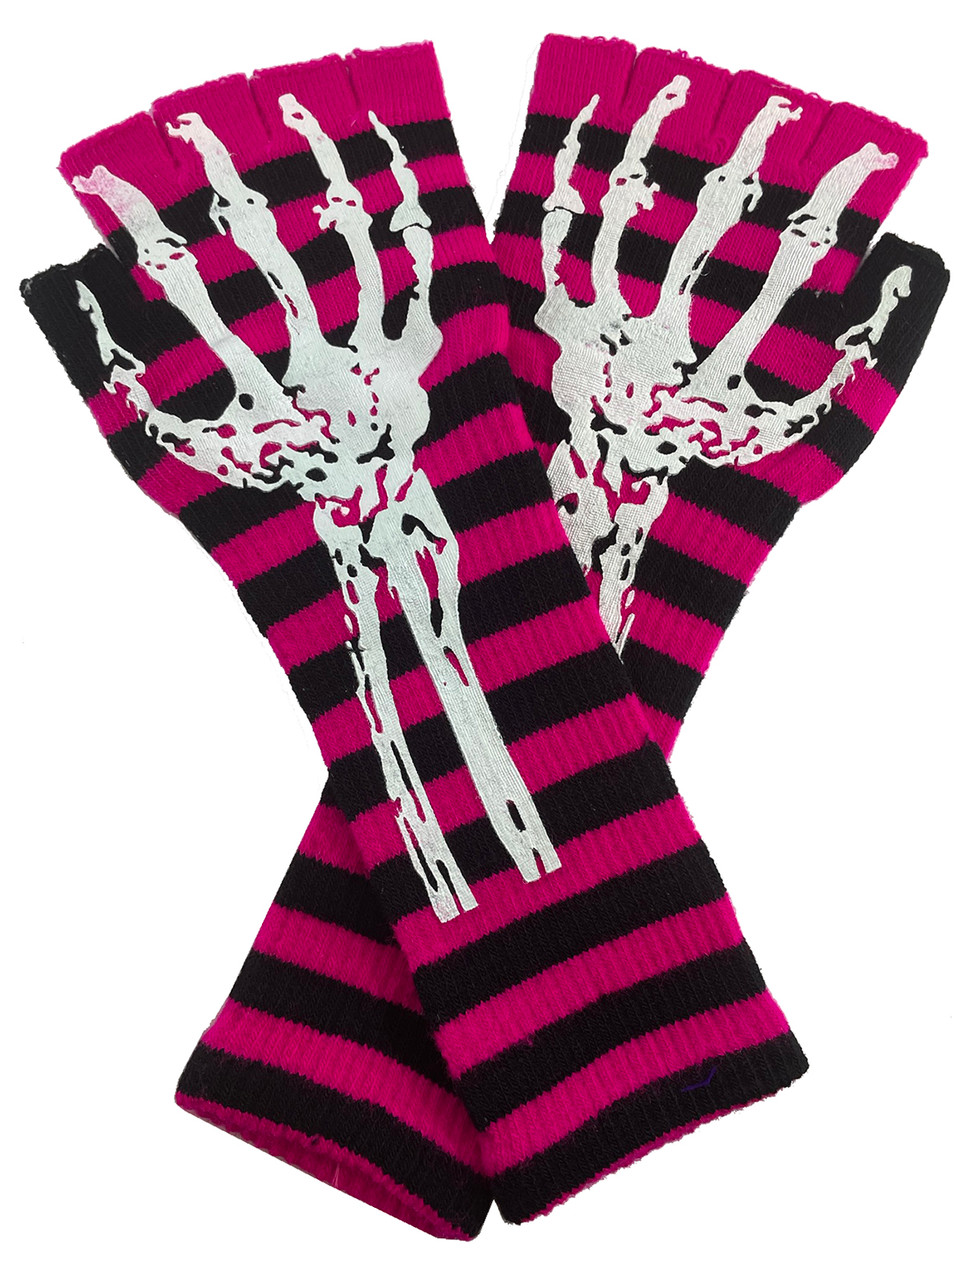 Gravity Threads Long 11 Knit Warm Skeleton Fingerless Gloves